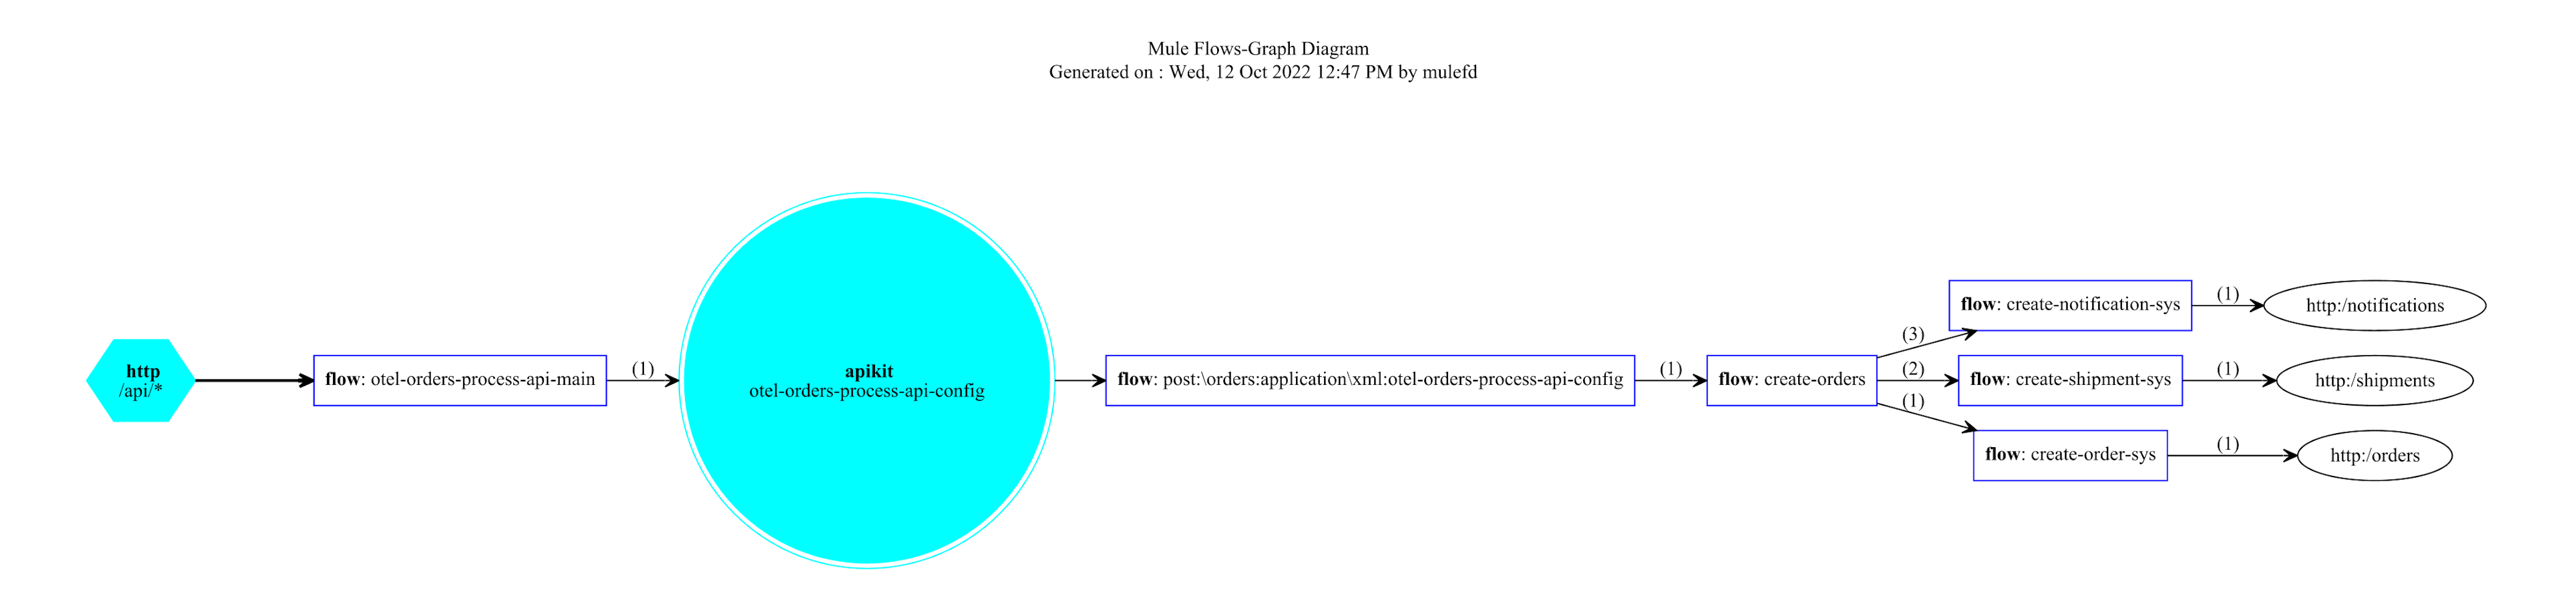 mule flow diagram order process api